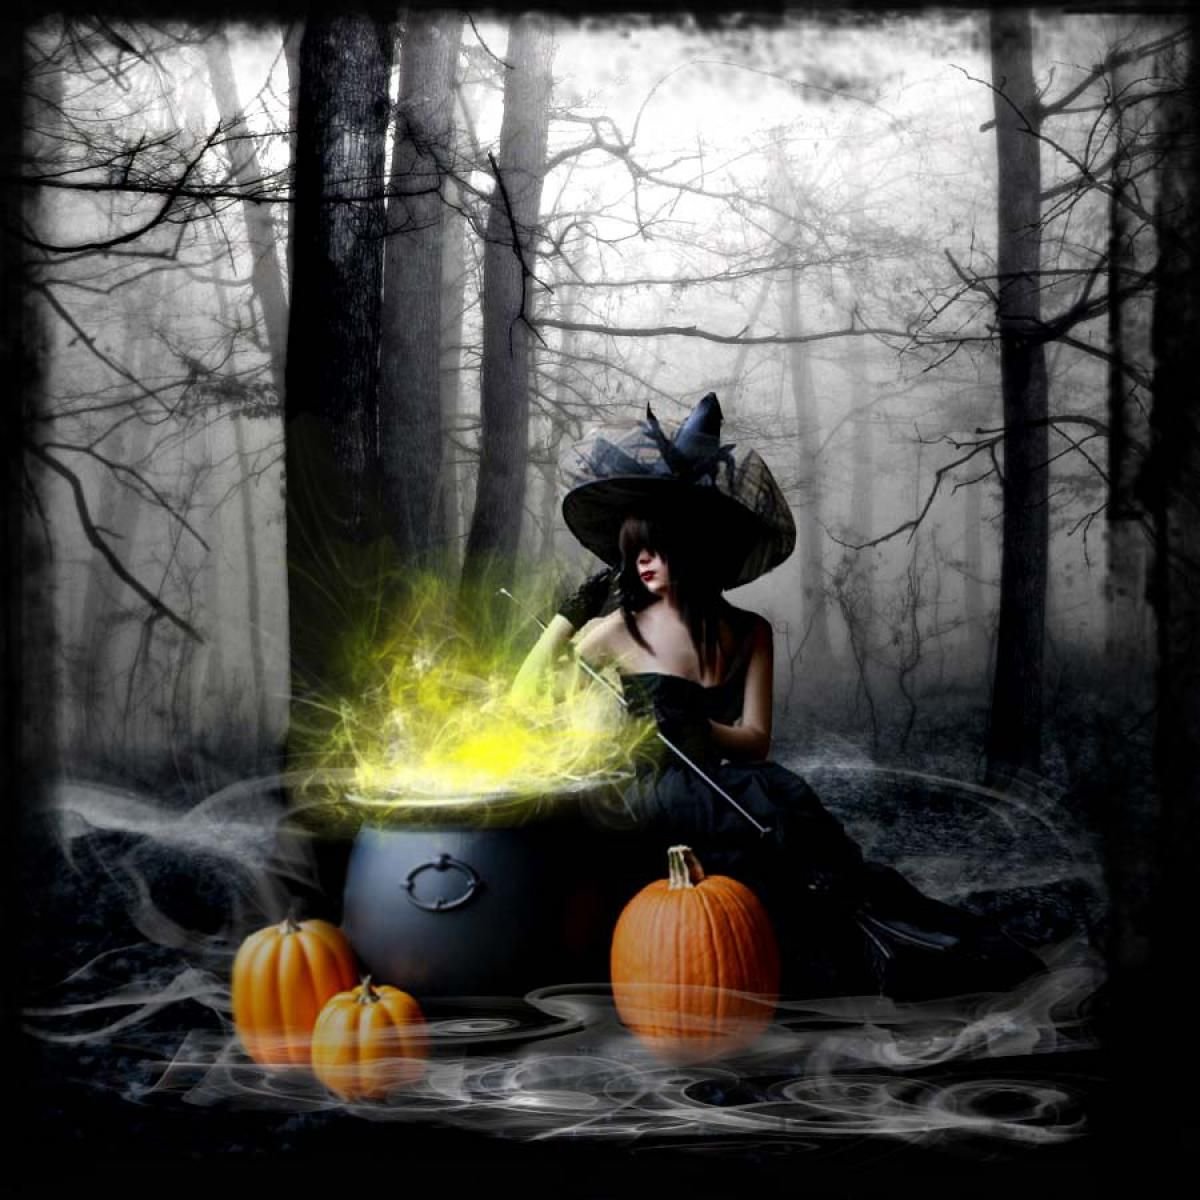 Хэллоуин ведьма картинки - картинки, фото и рисунки.